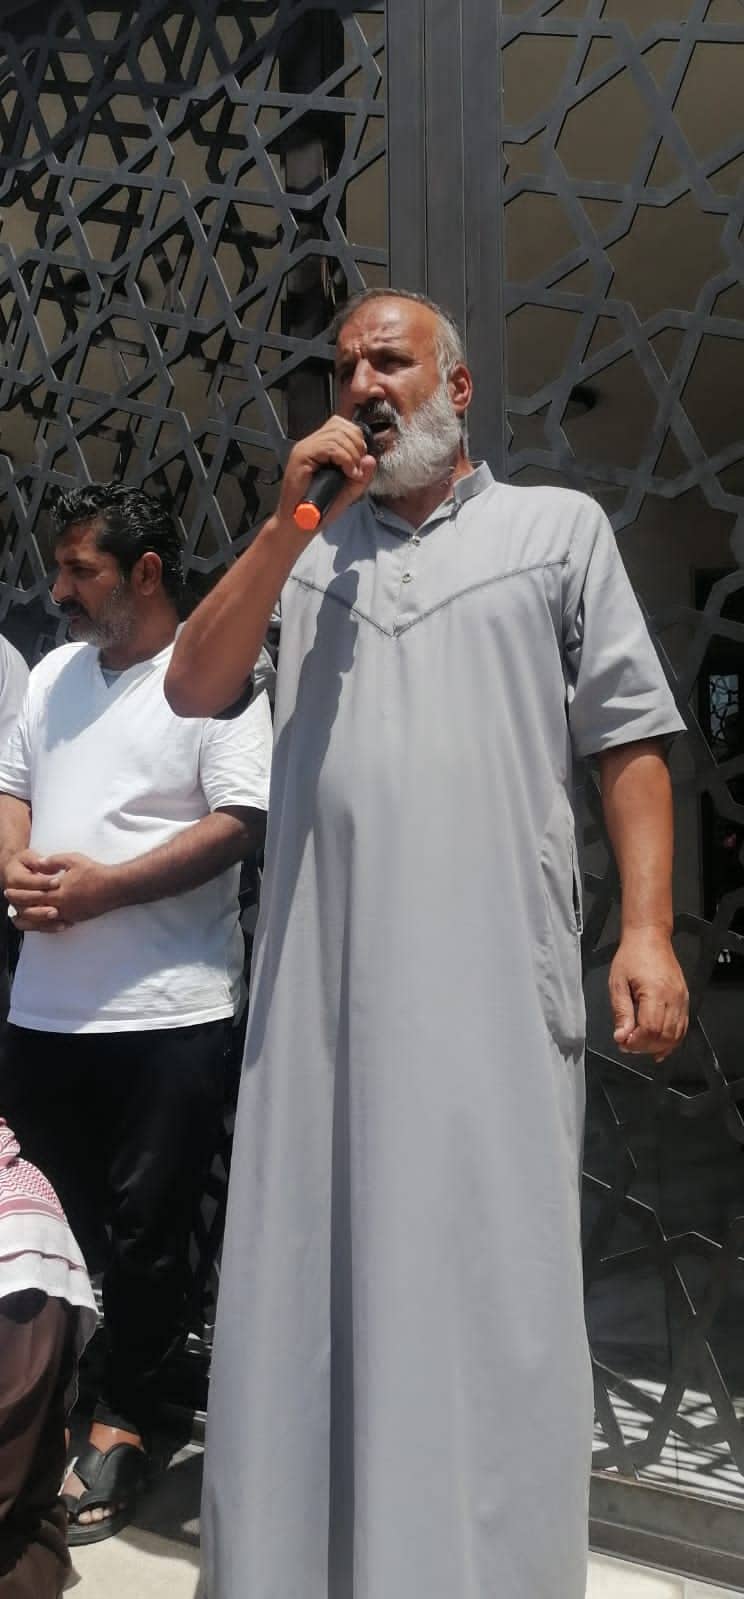 اعتصام في معان احتجاجا على نهج رفع الاسعار ورفضا لشركة مياه العقبة - صور